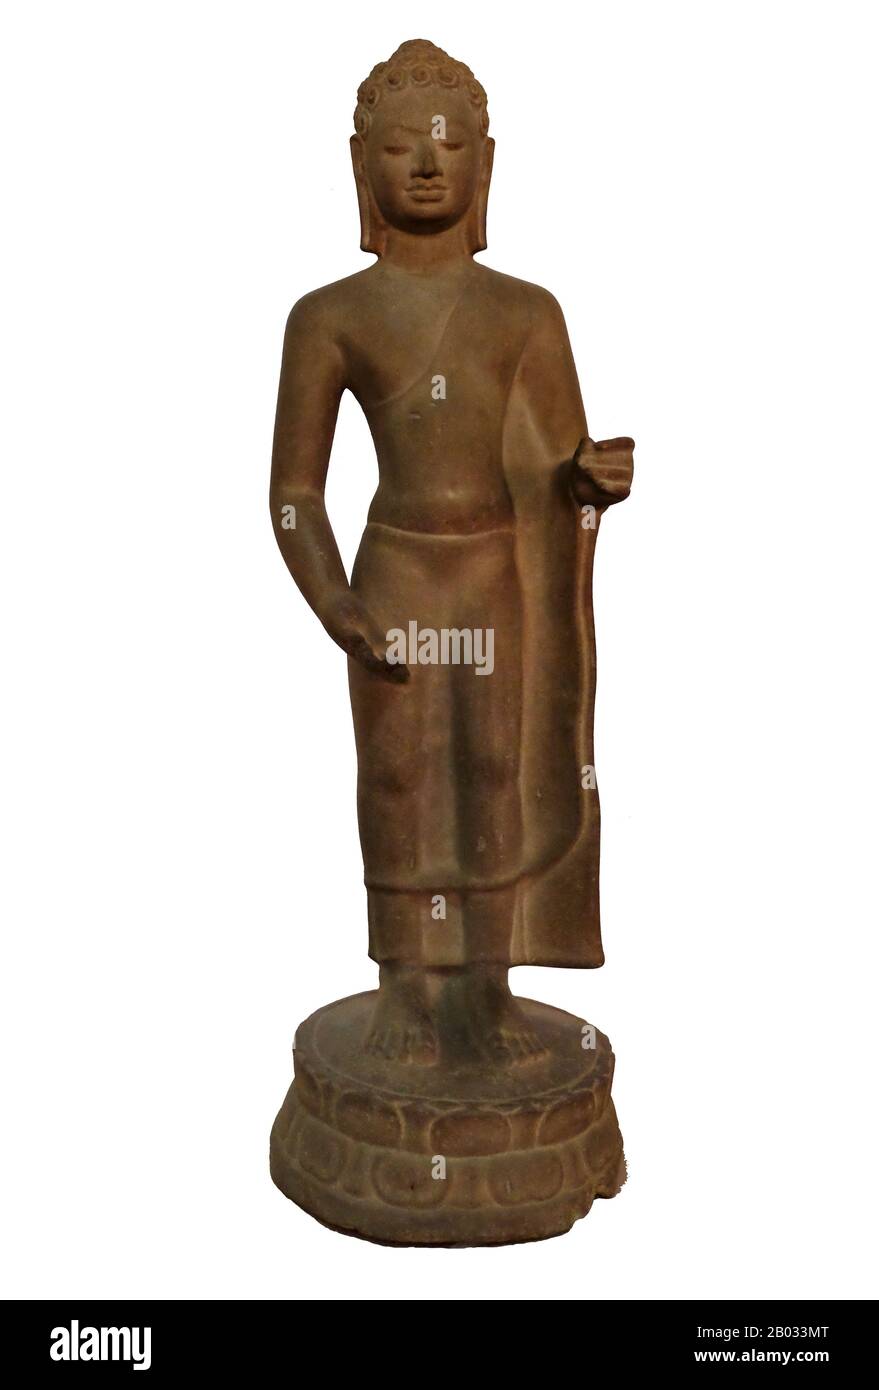 El Museo Nacional, ubicado en un pabellón rojo construido en 1918, alberga una colección de arte Khmer que incluye algunas de las mejores piezas existentes. Las exposiciones incluyen una estatua del siglo VI de Vishnu, una estatua del siglo IX de Shiva, y la famosa cabeza esculpida de Jayavarman VII en posición meditativa. Particularmente impresionante es un busto dañado de un Vishnu reclinado que fue una vez parte de una estatua de bronce masiva encontrada en el templo de Western Mebon en Angkor. Foto de stock